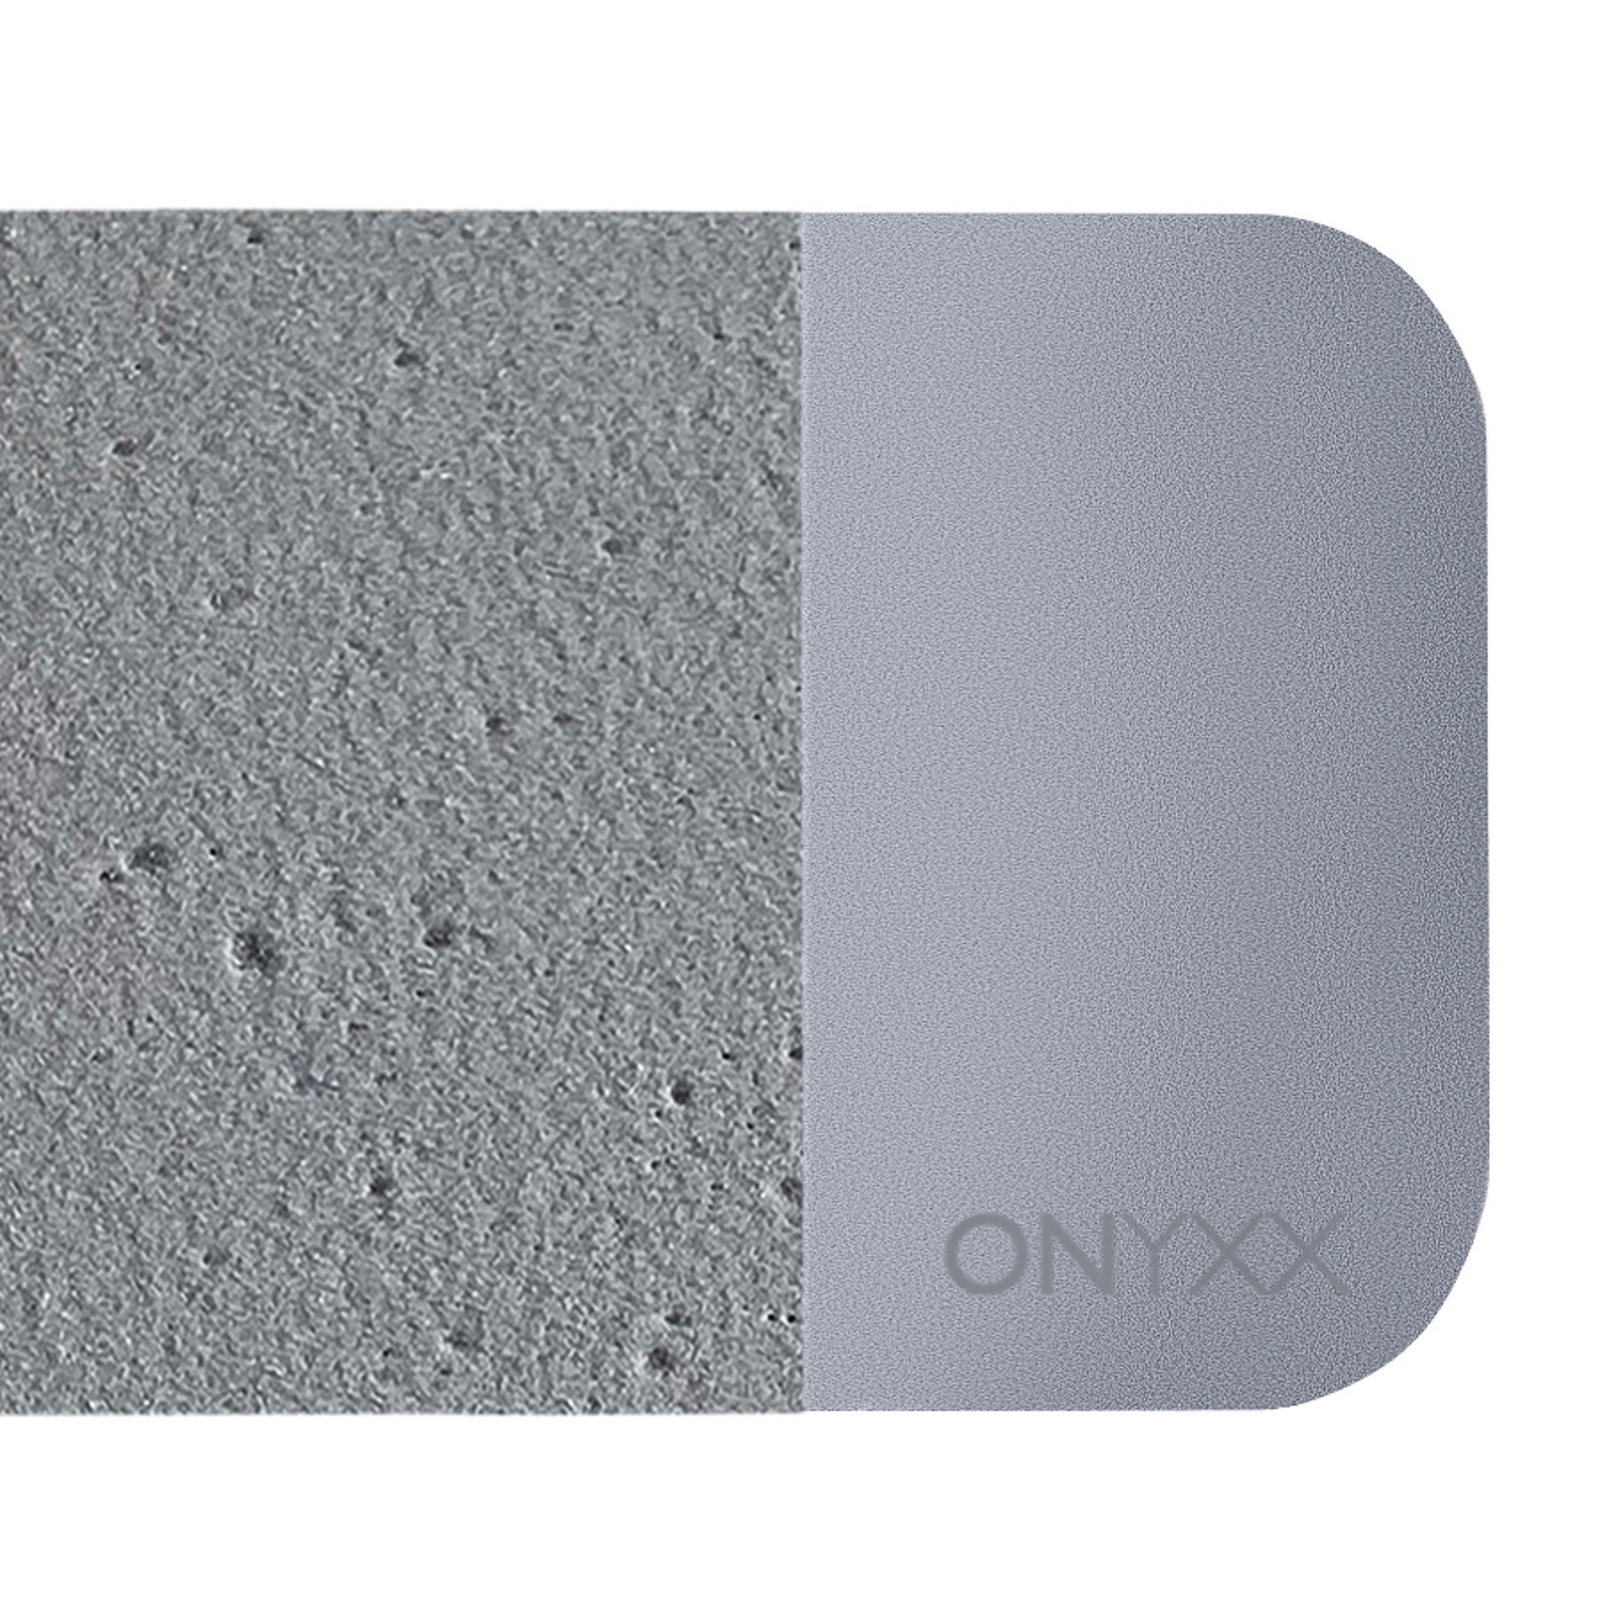 GRIMMEISEN Onyxx Linea Pro-riippuvalo betoni/hopea